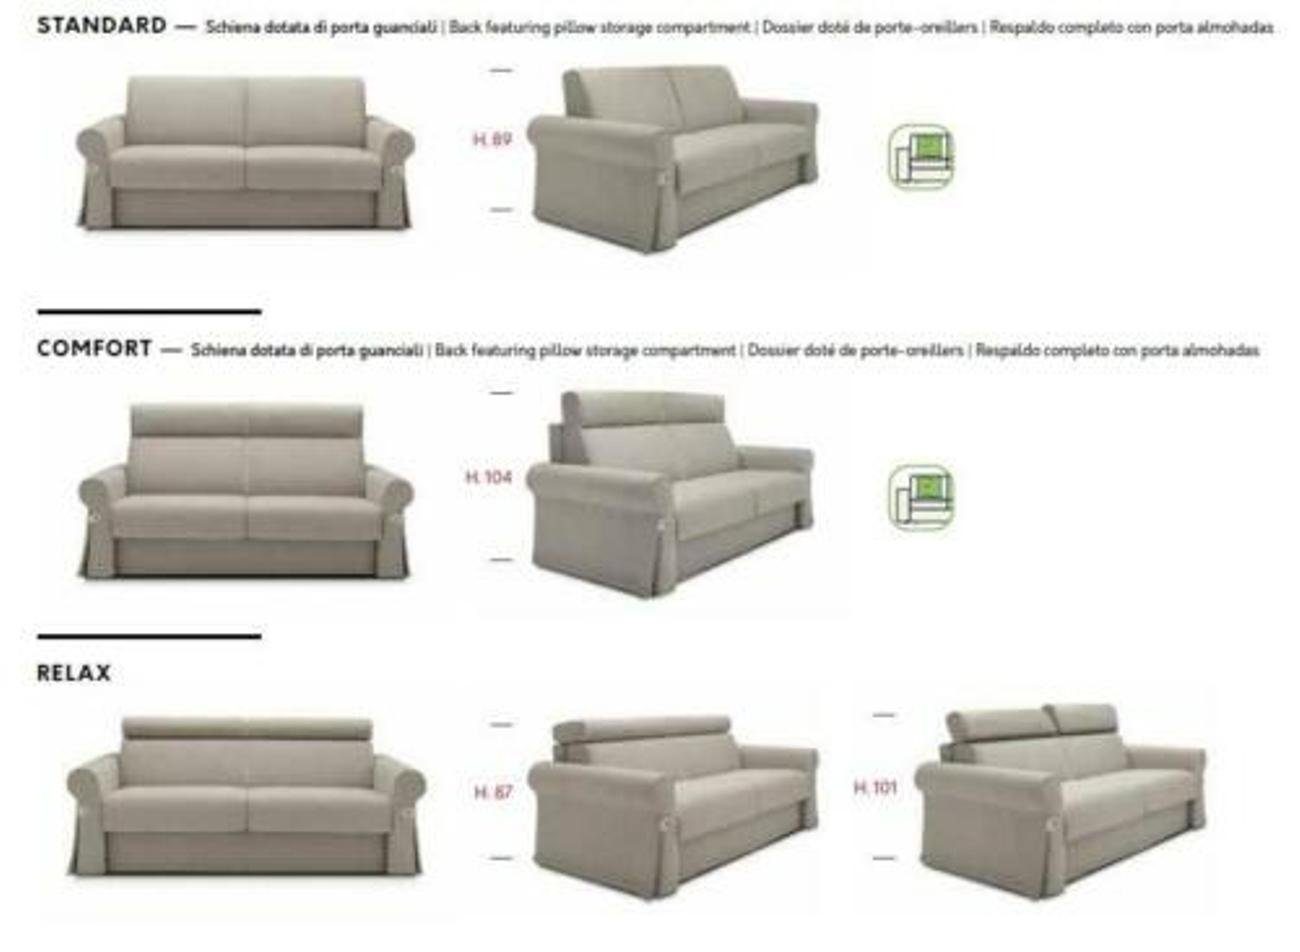 Zweisitzer 2-Sitzer, JVmoebel Sofa Design Polster Wohnzimmer Textil Sofas